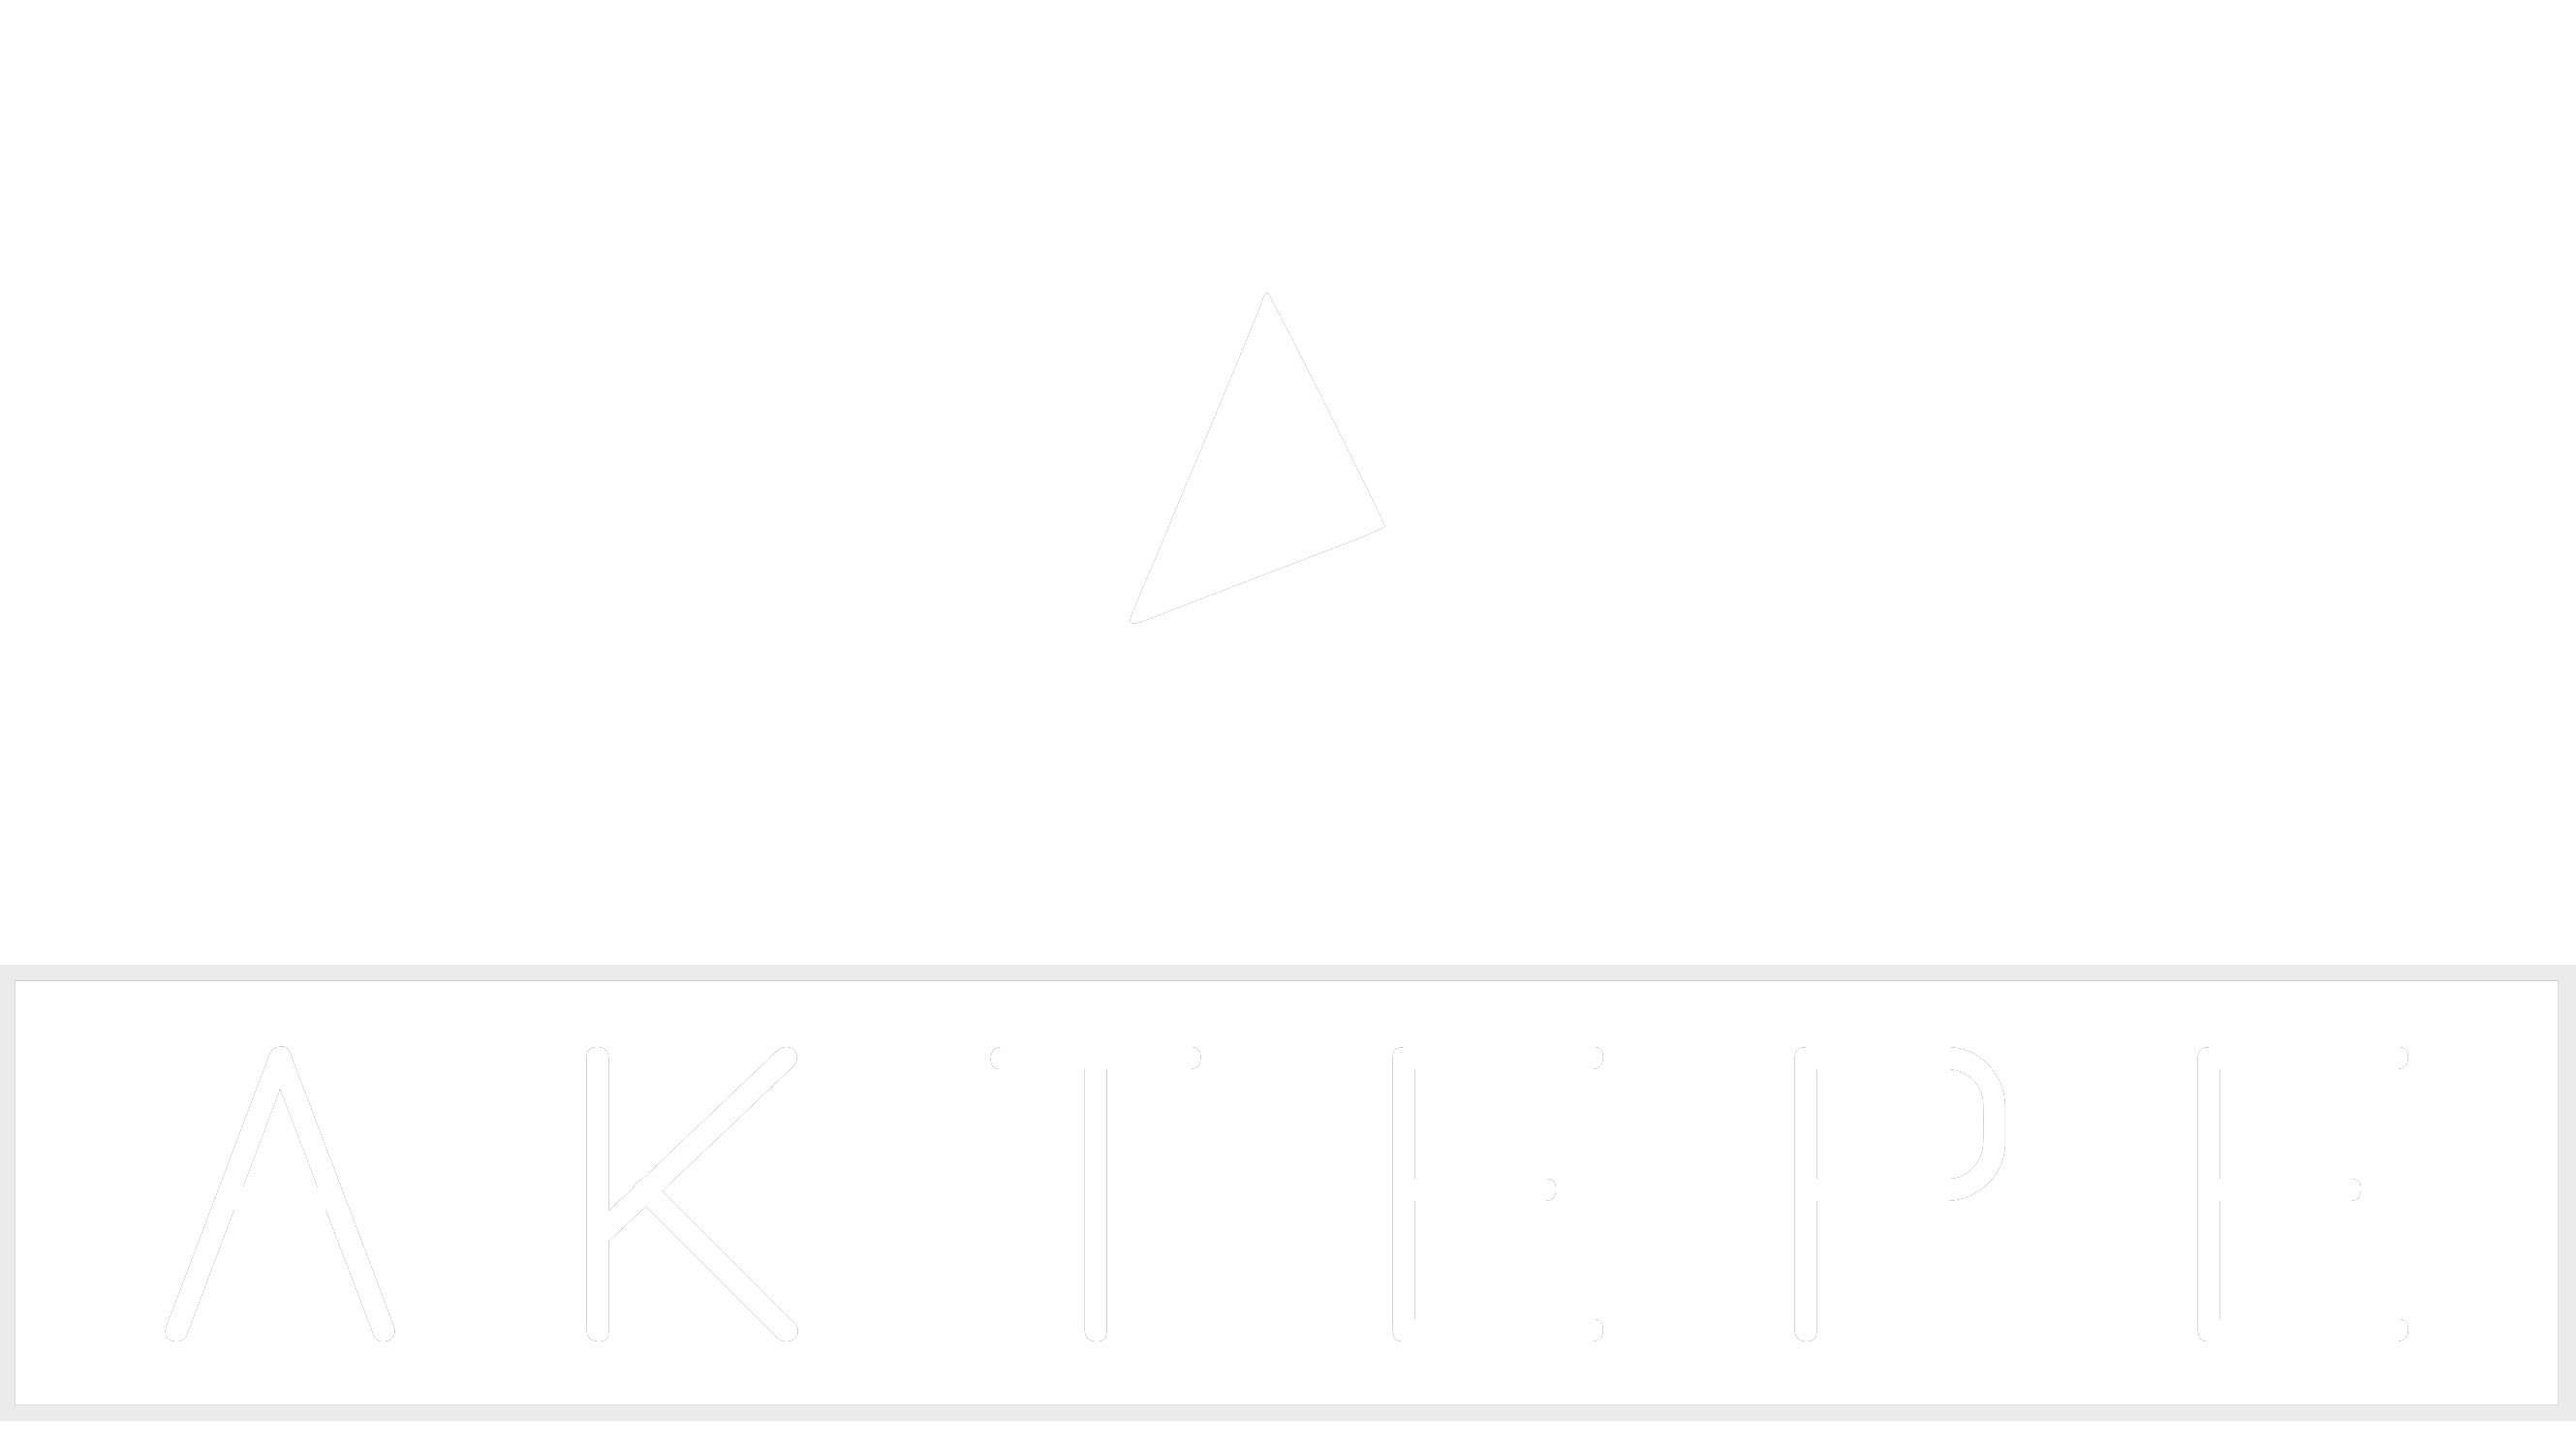 Ducato - Aktepe Shop - Oto Müzik Görüntü Navigasyon Sistemleri ve Teyp Çerçevesi Satış Merkezi